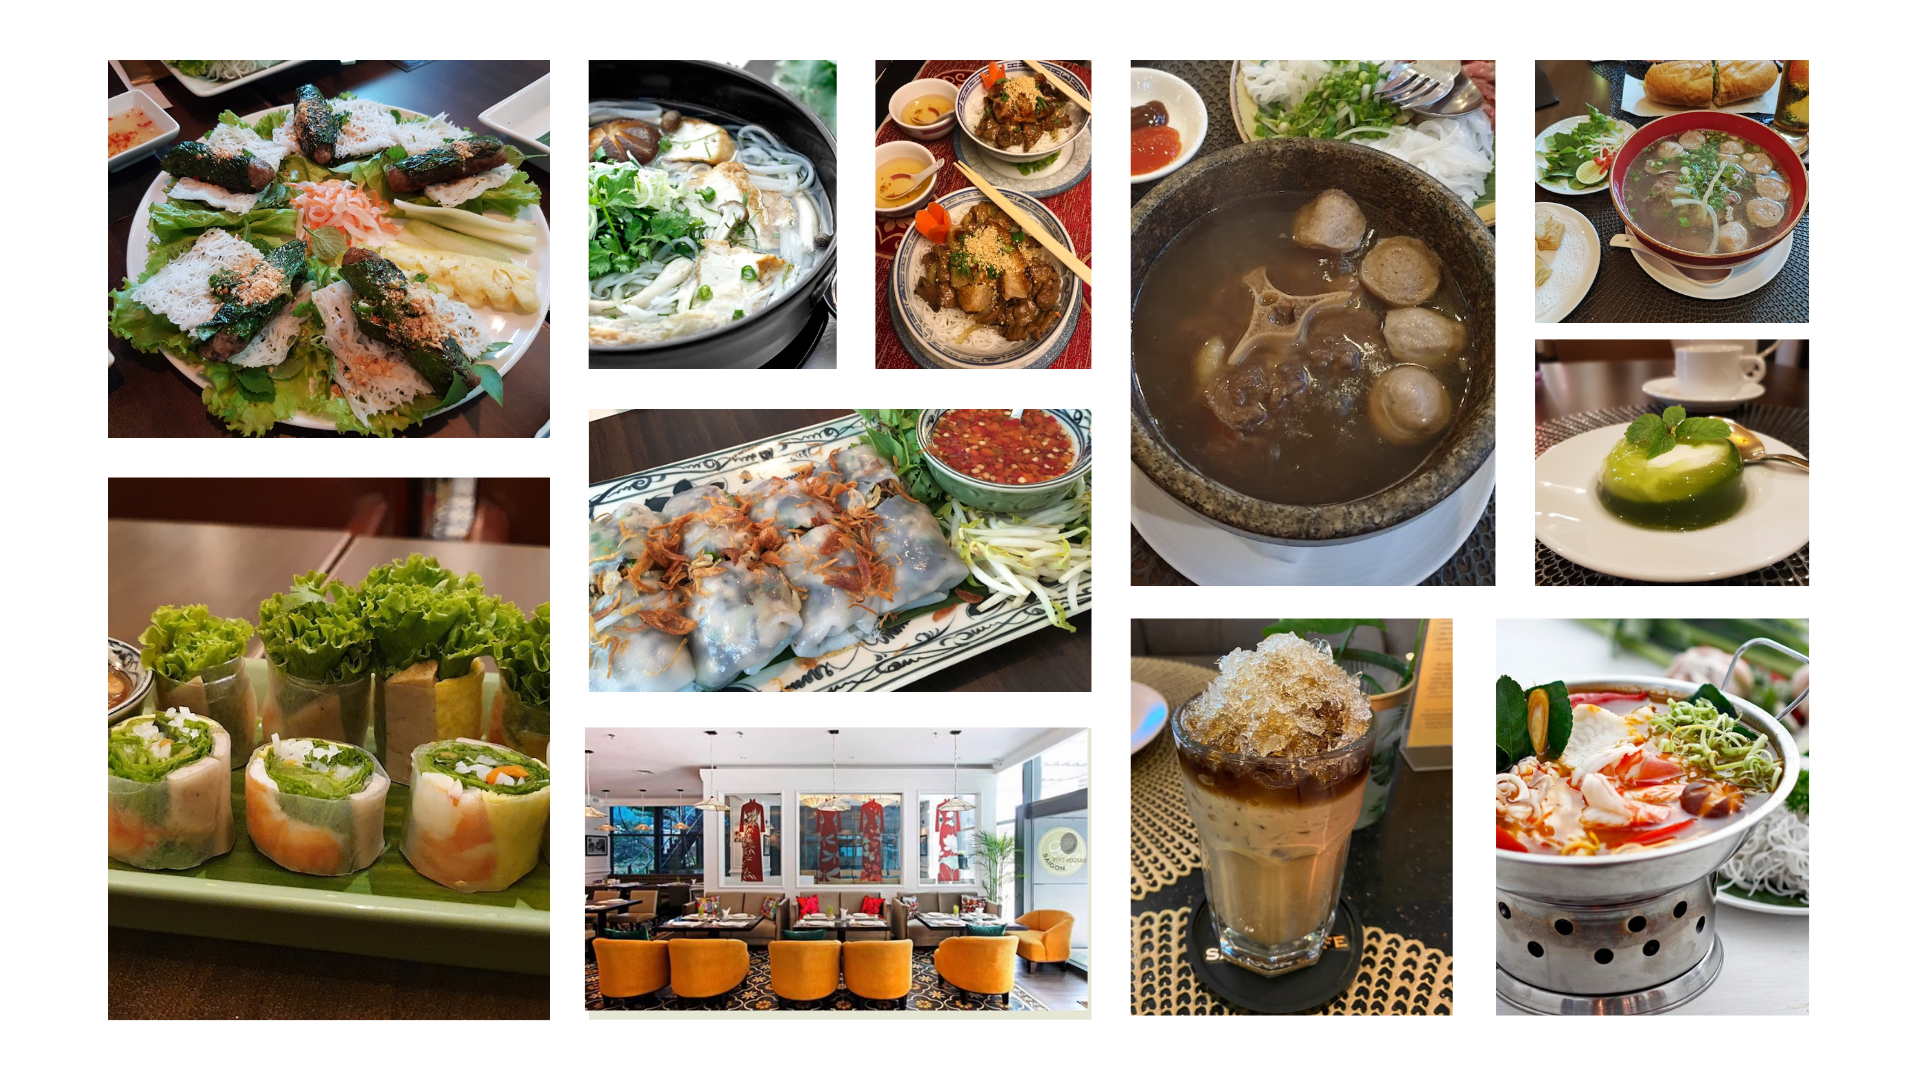 Restoran - Yeu Saigon Cafe -17 Restoran untuk Makan Siang di Jakarta Selatan - YOEXPLORE